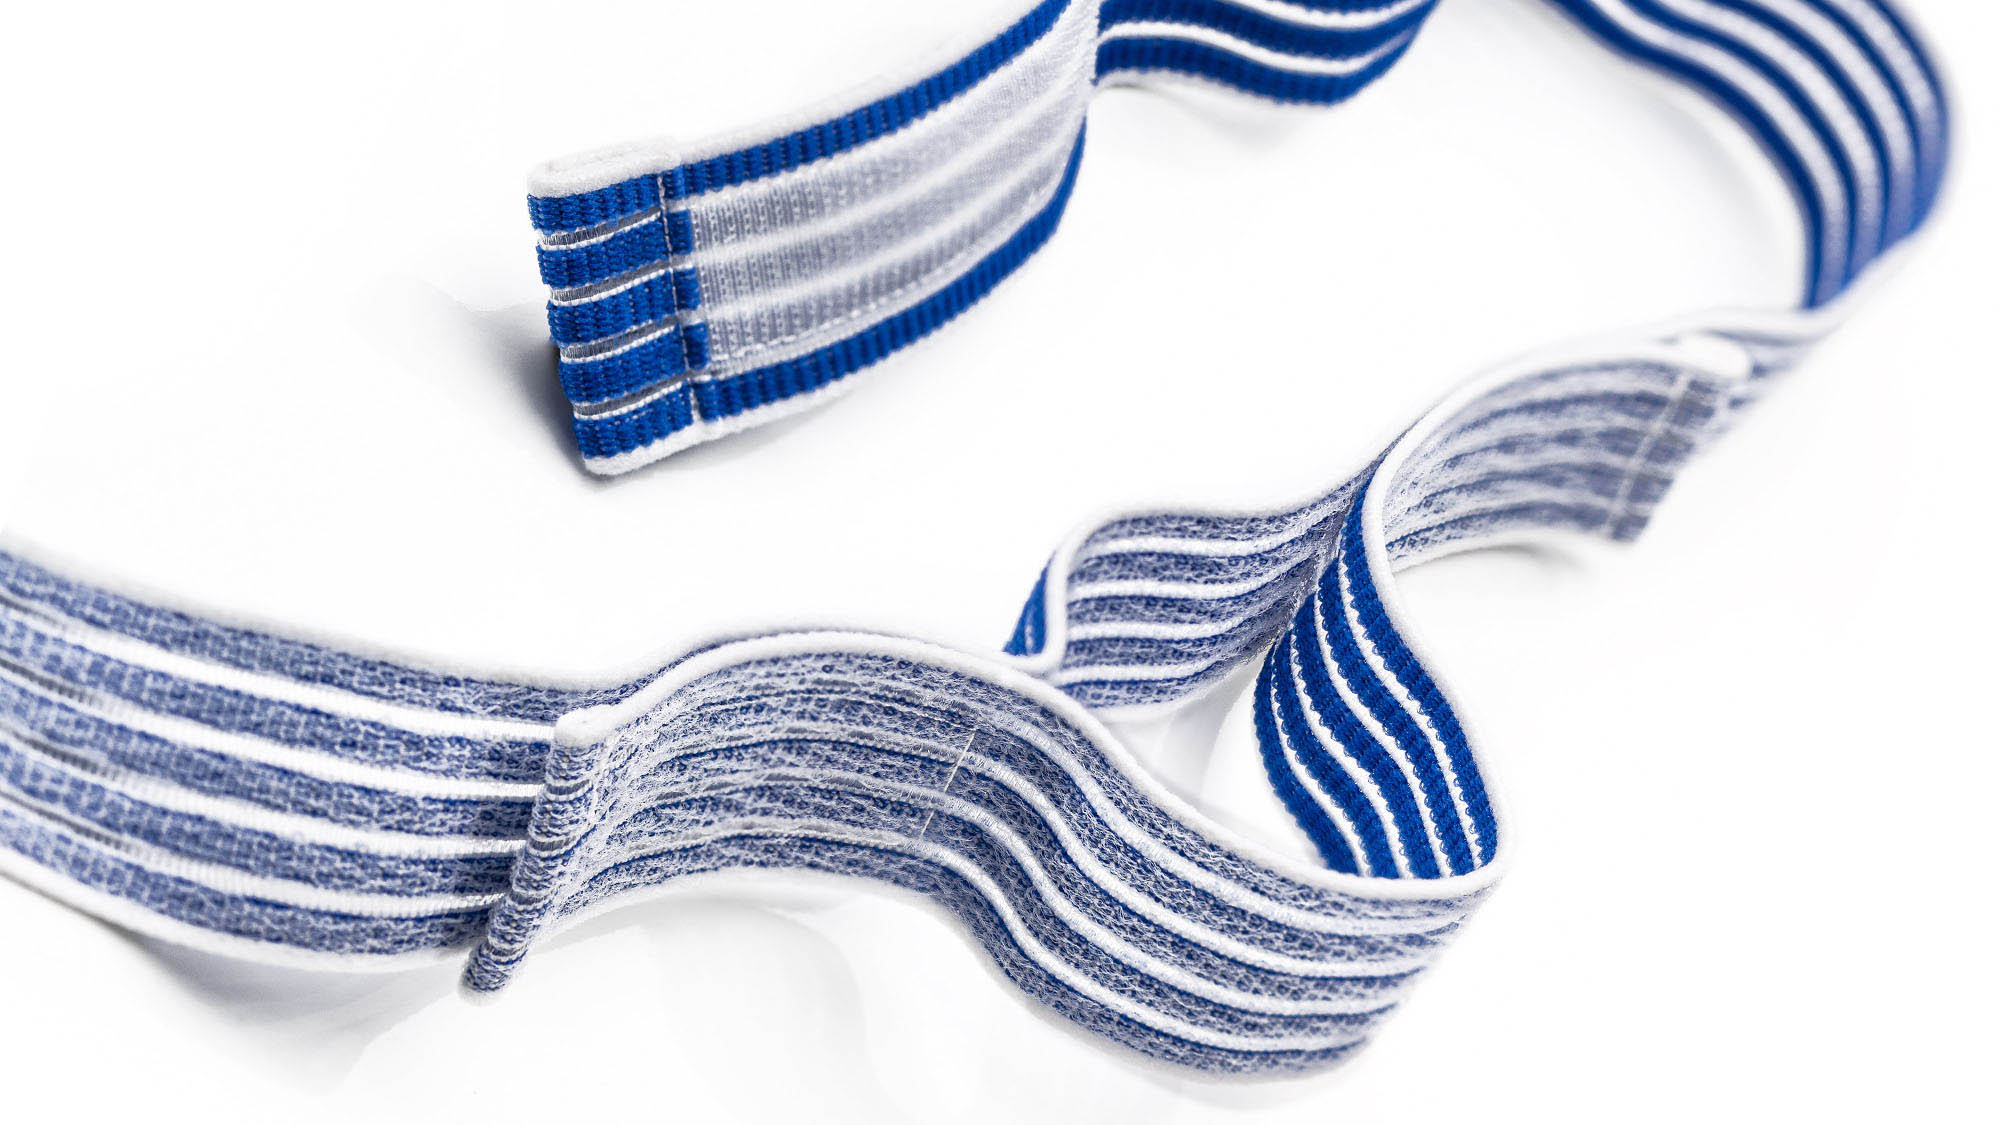 Klettfähiger Elastikgurt: Produktfoto eines blau-weißen und elastischen Klettband auf weißem Hintergrund